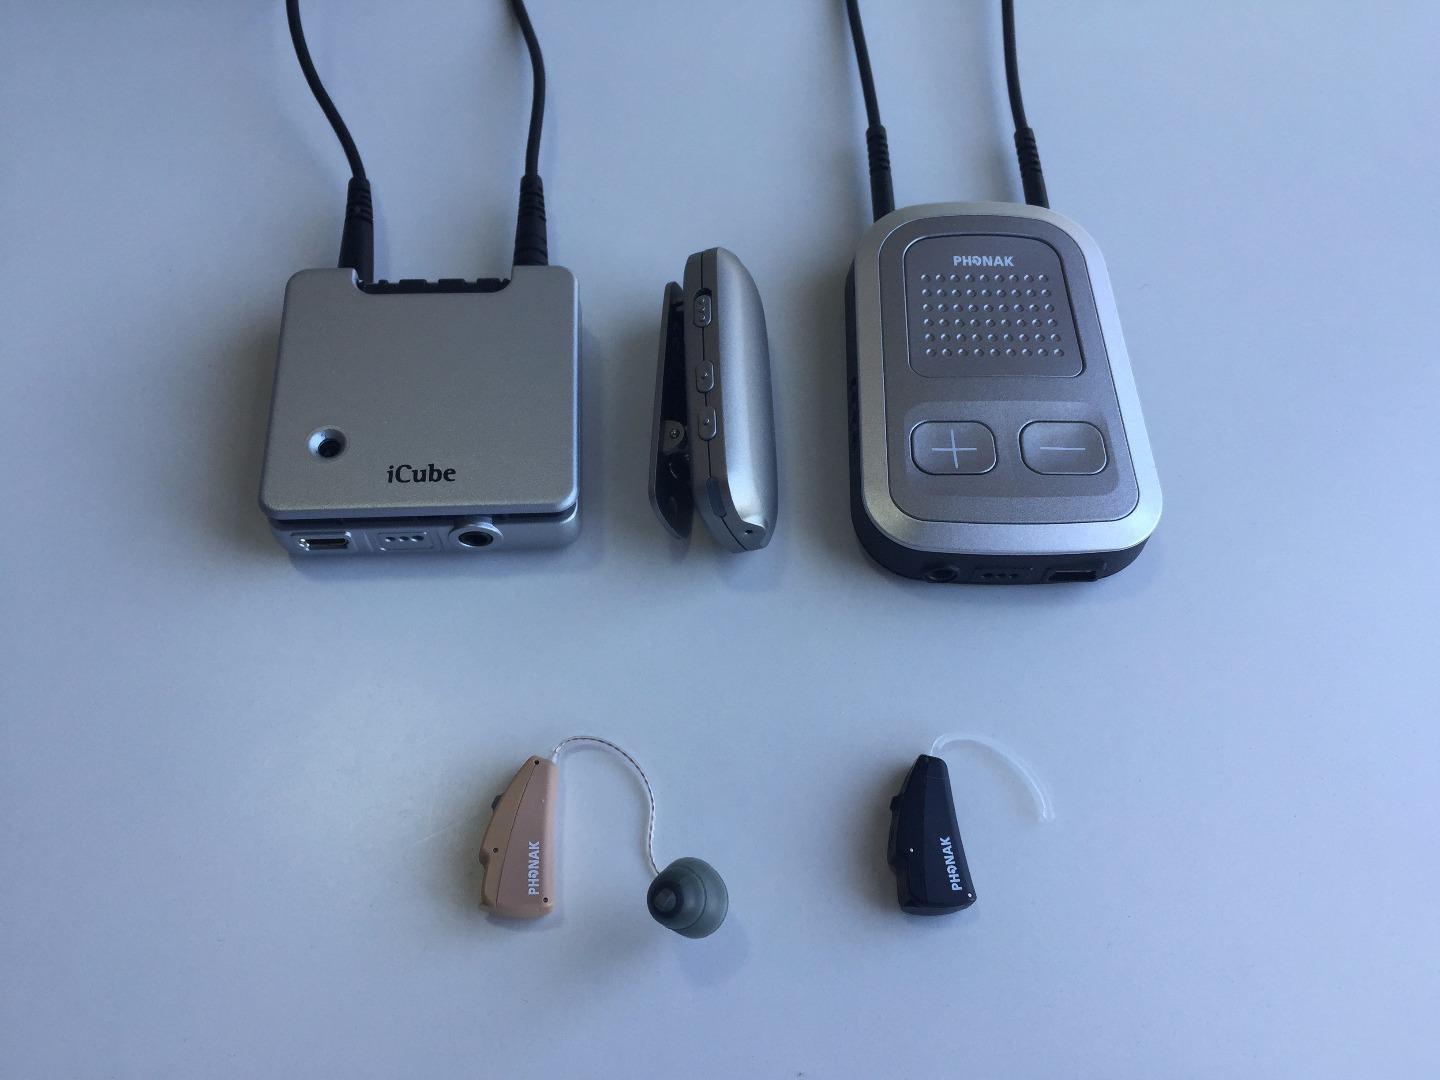 峰力助聽器和瑞聲達助聽器的實戴感受對比